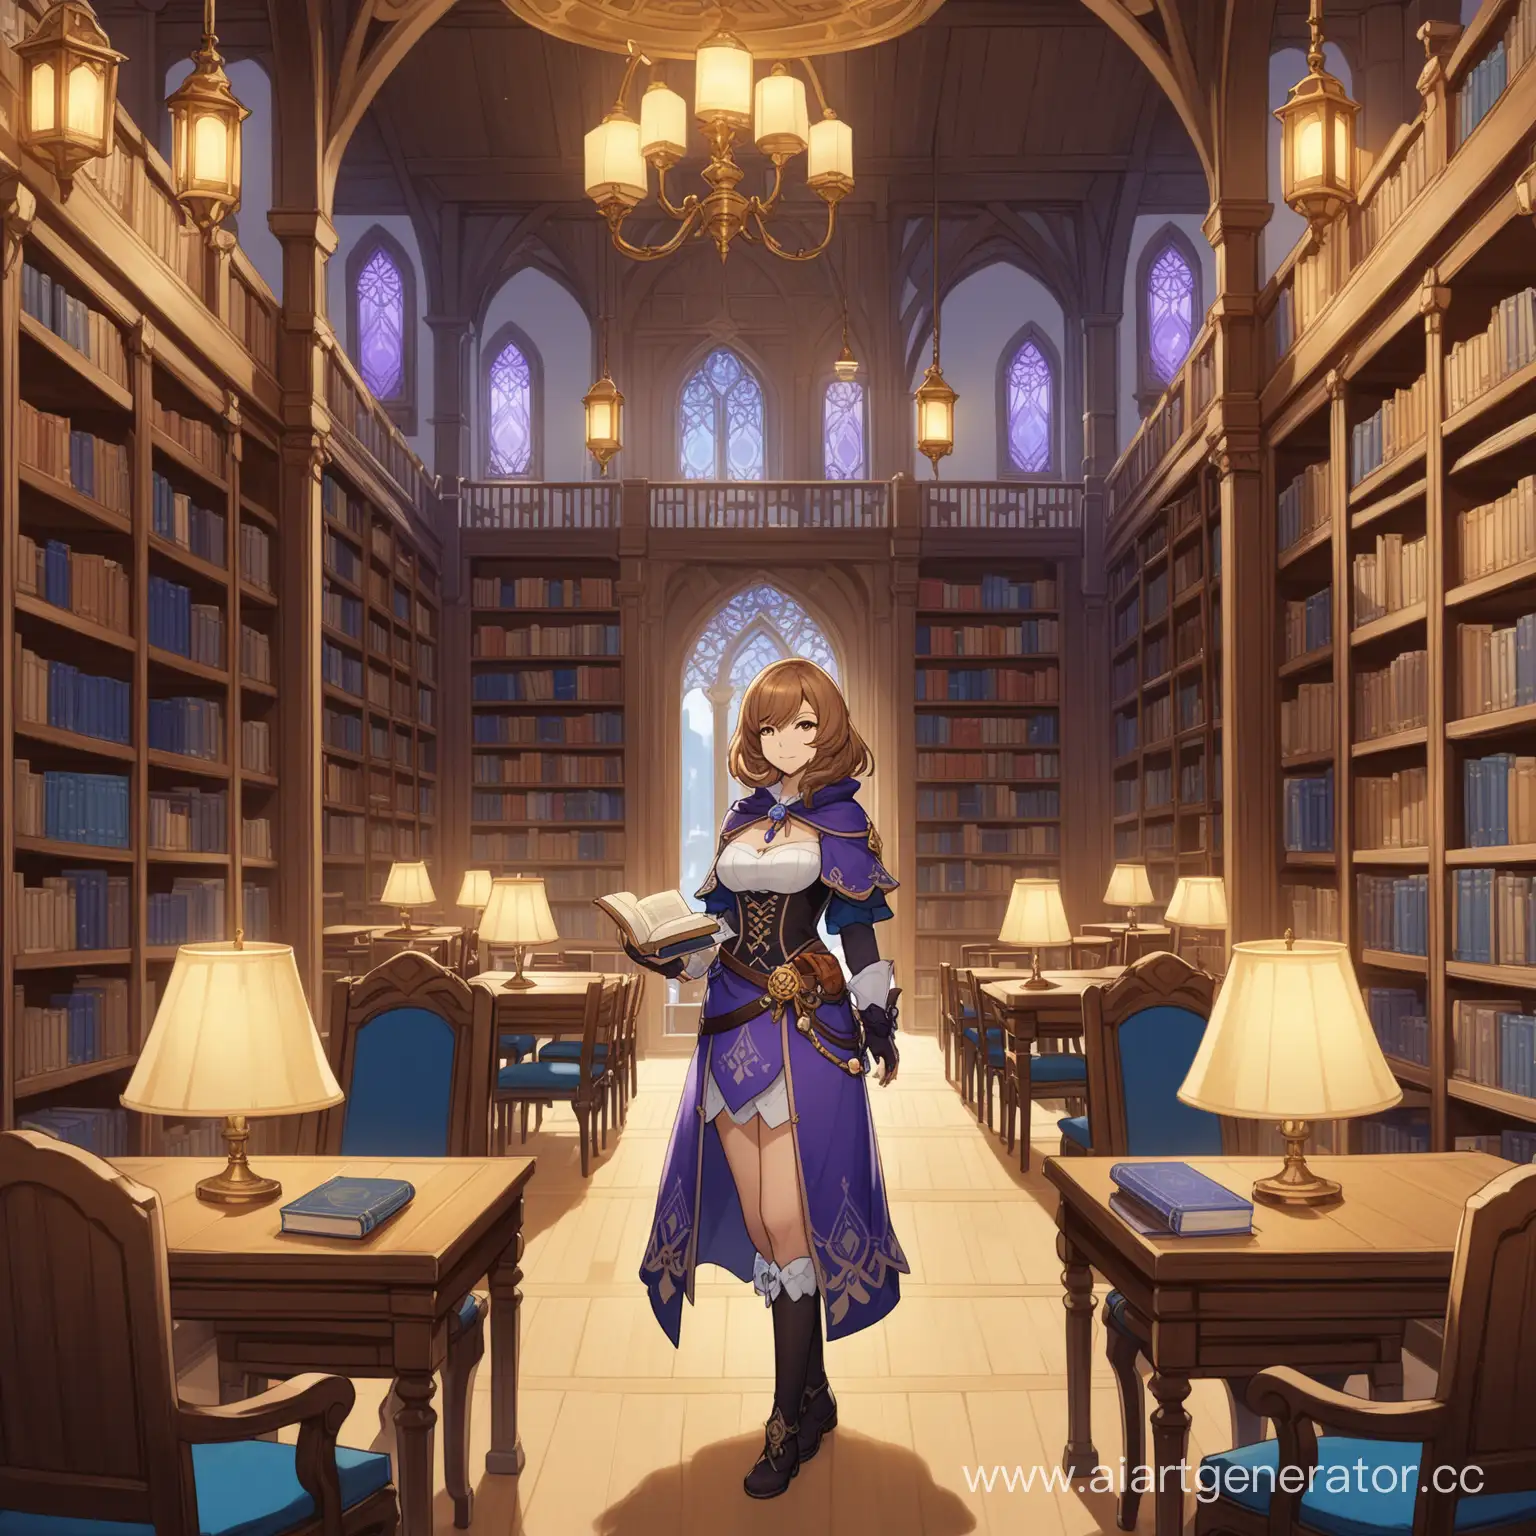 персонаж Лиза из игры Genshin Impact, в полный рост, стоит с книгой, вокруг книжные полки, вокруг столы, вокруг стулья, вокруг светильники, библиотека